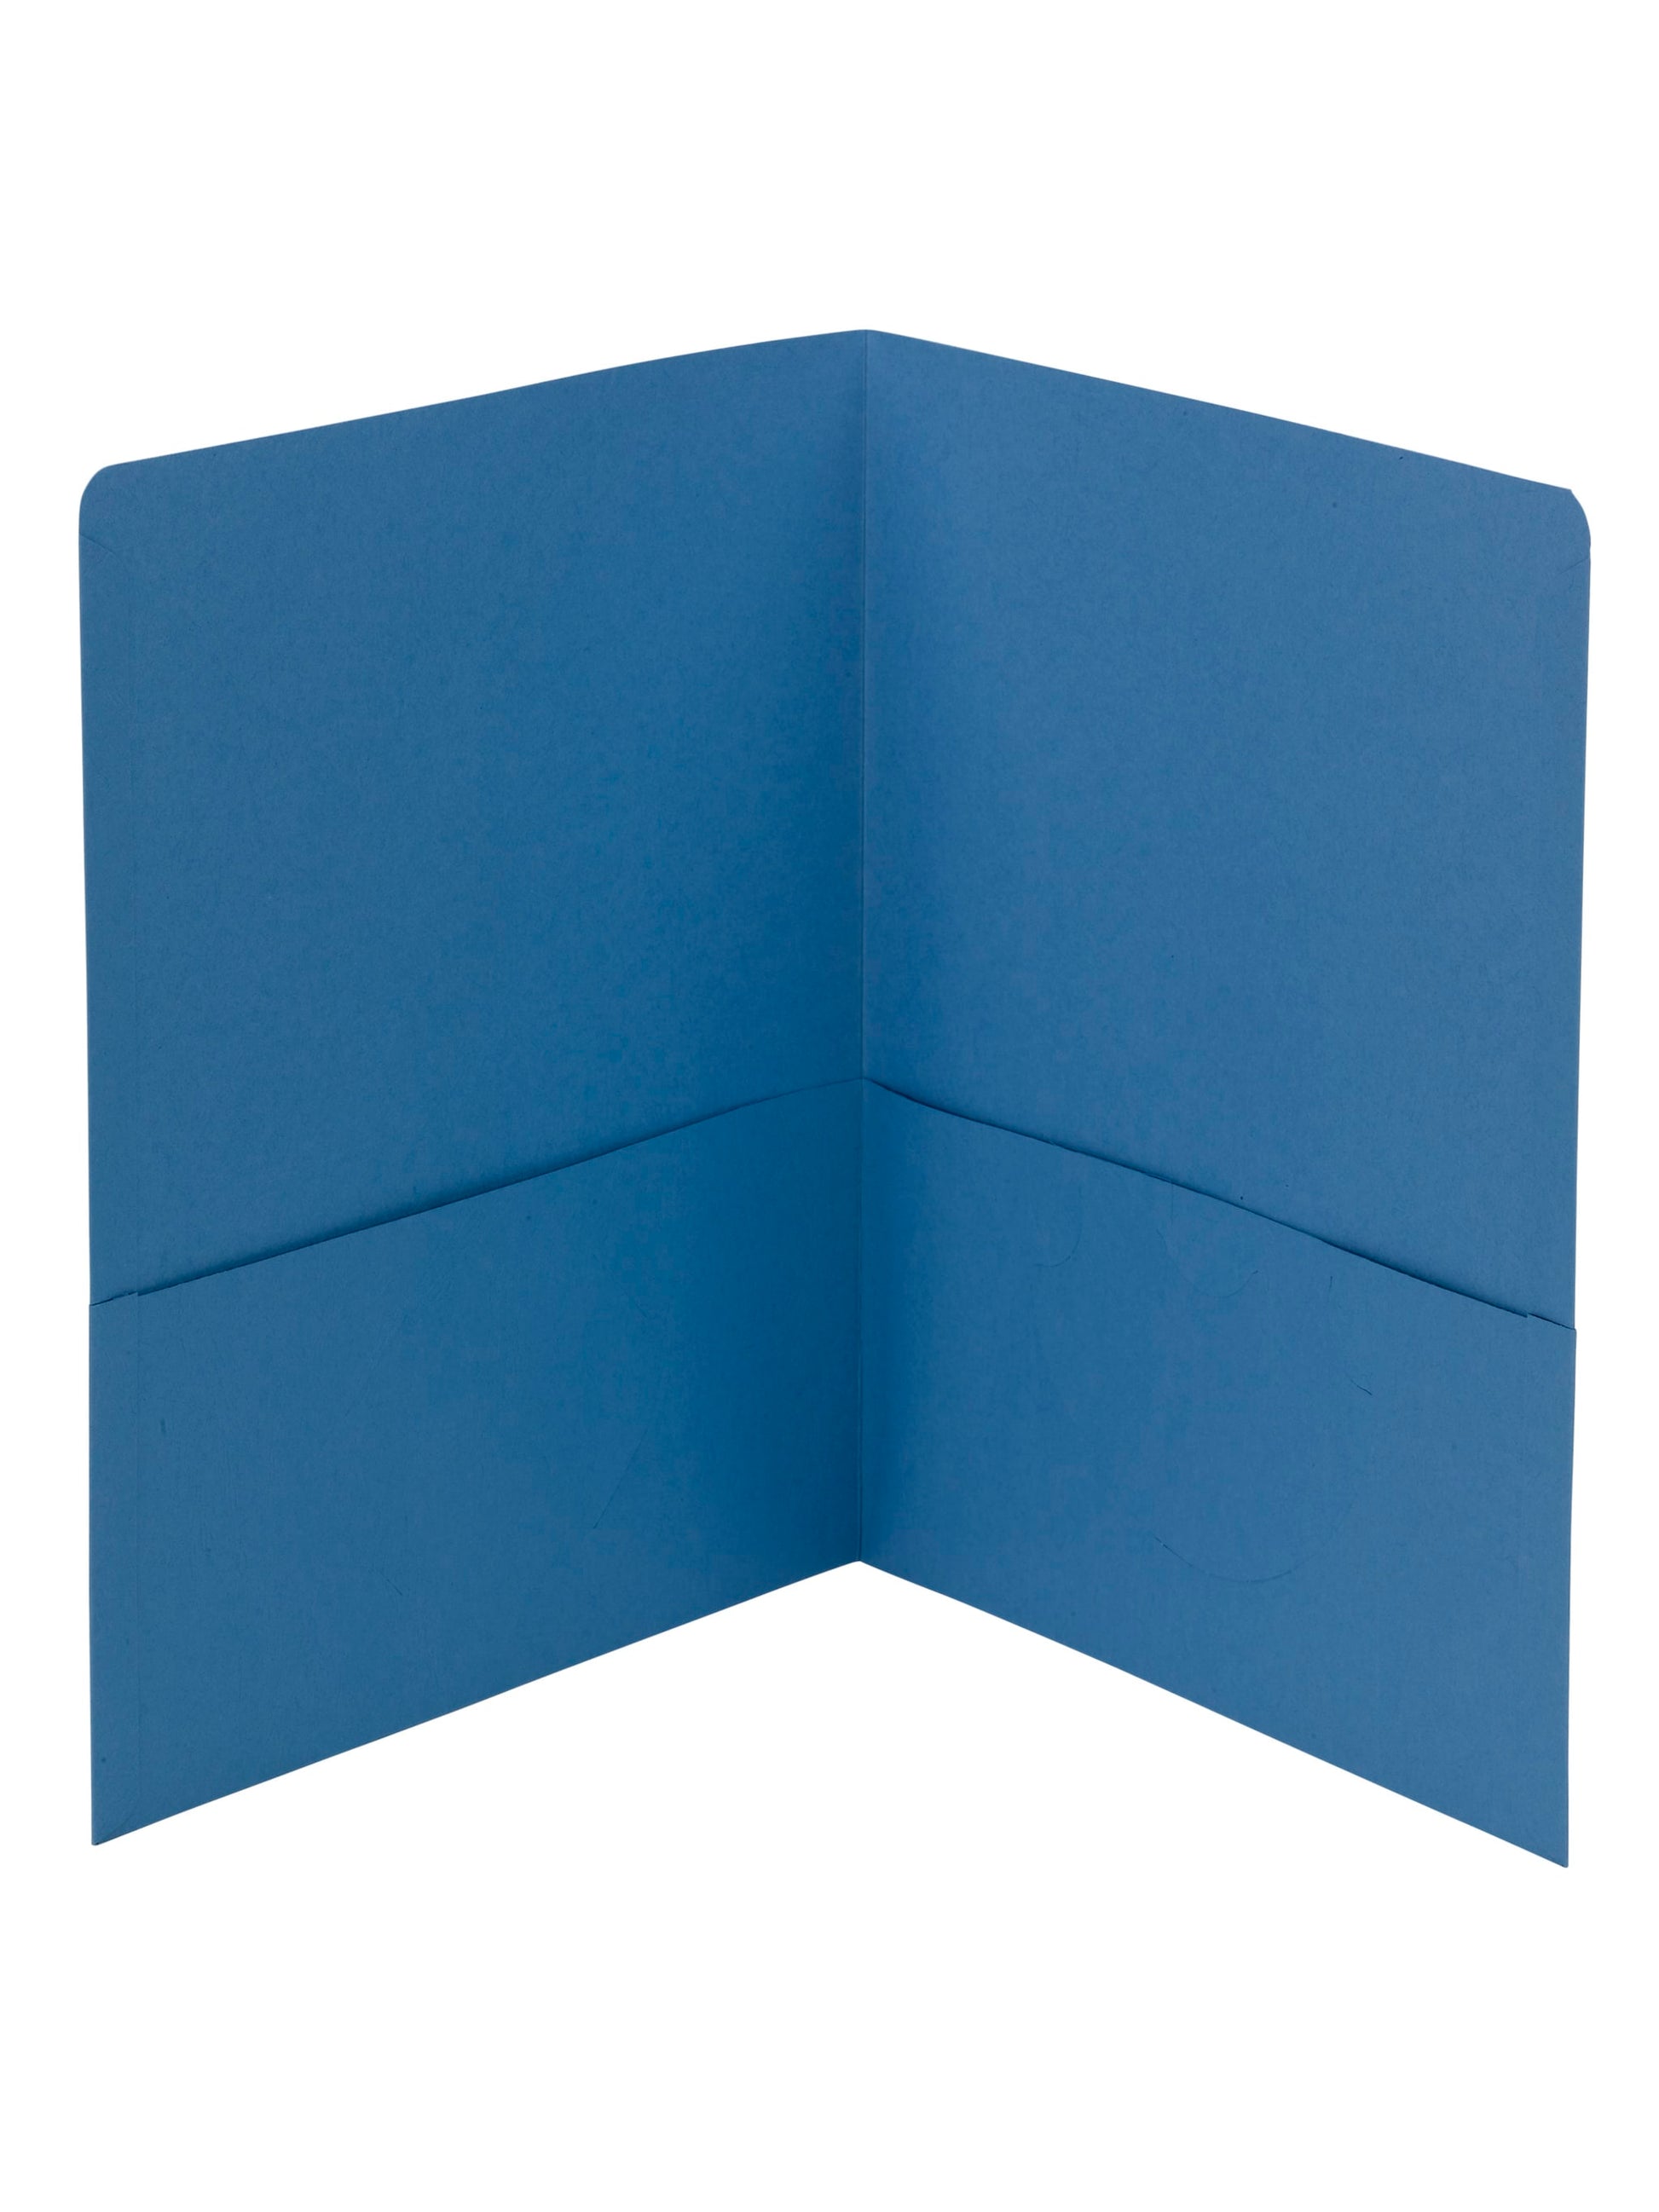 Standard Two-Pocket Folders, Blue Color, Letter Size, Set of 0, 30086486878525